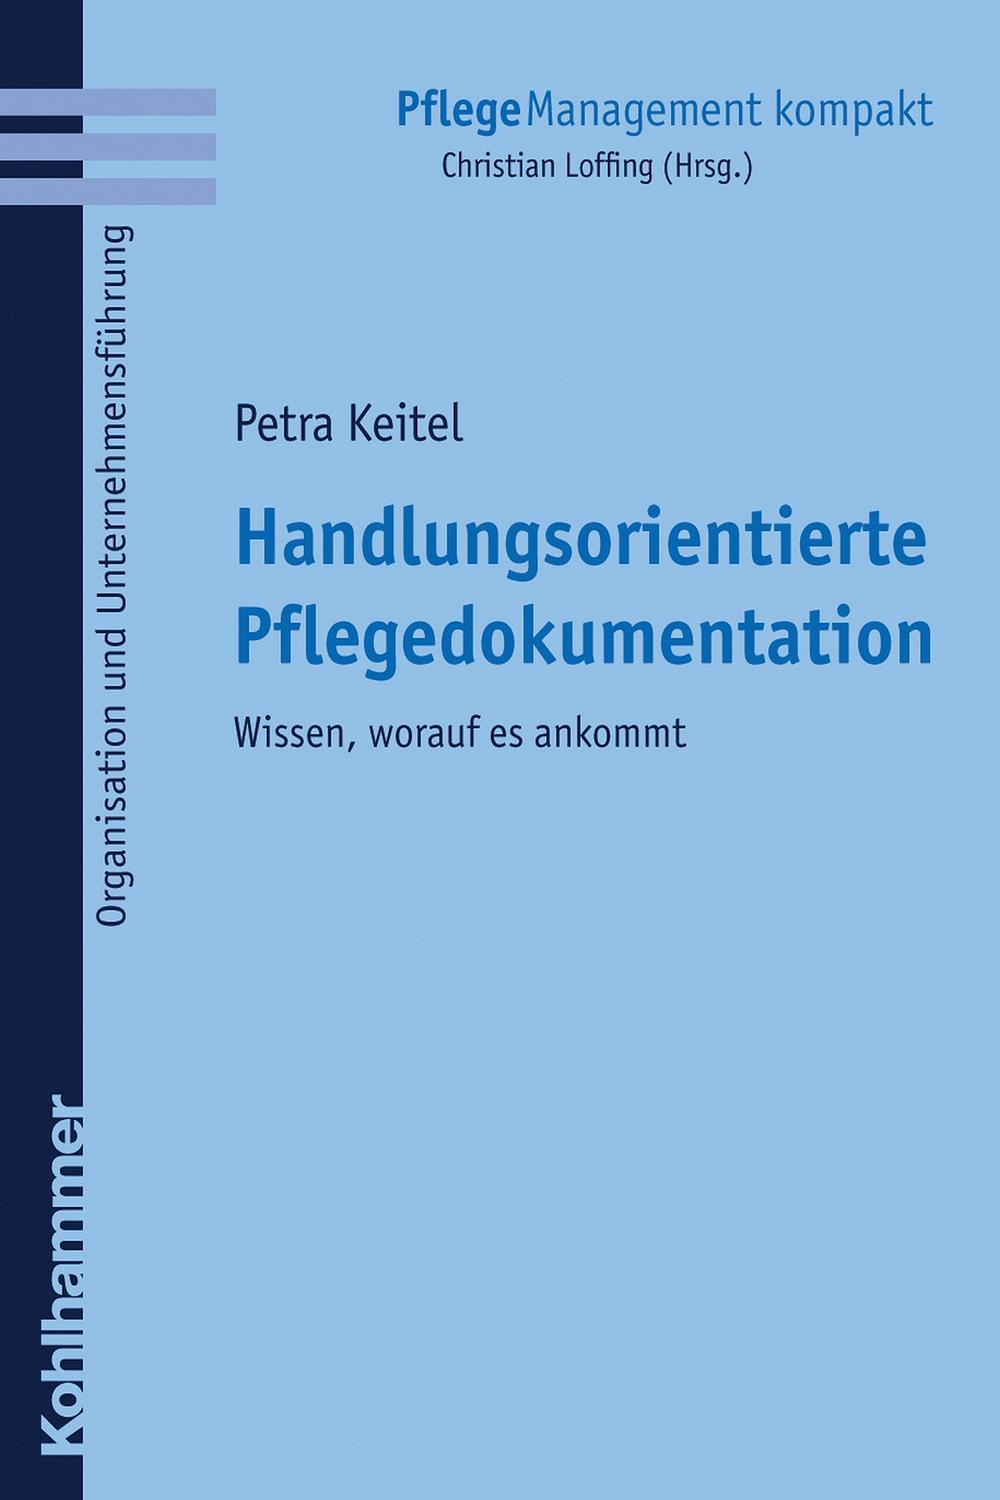 Handlungsorientierte Pflegedokumentation - Petra Keitel, Christian Loffing